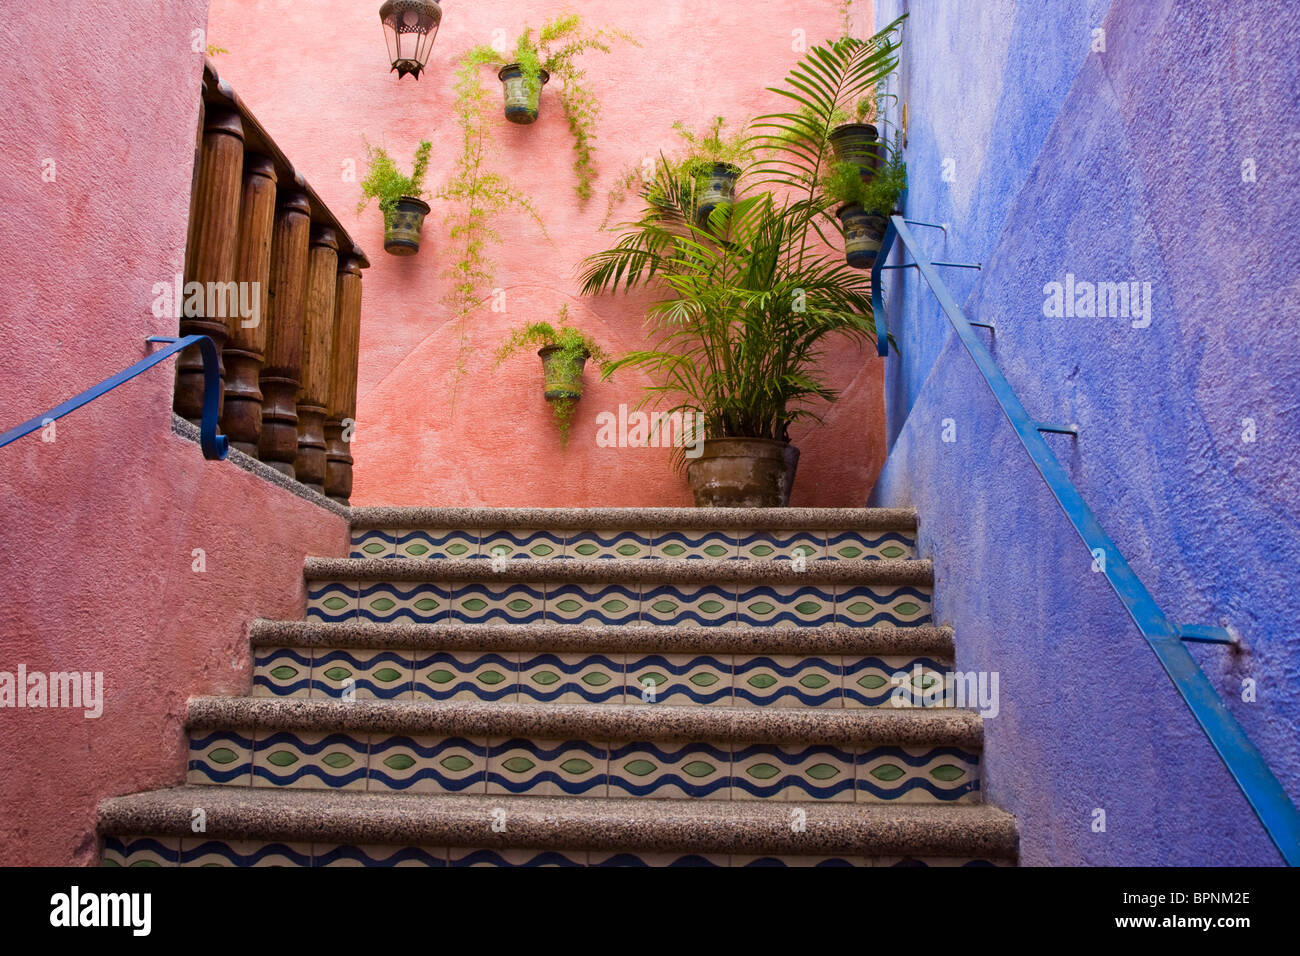 Central America, Guatemala, Antigua. Small boutique hotel in Antigua. Stock Photo